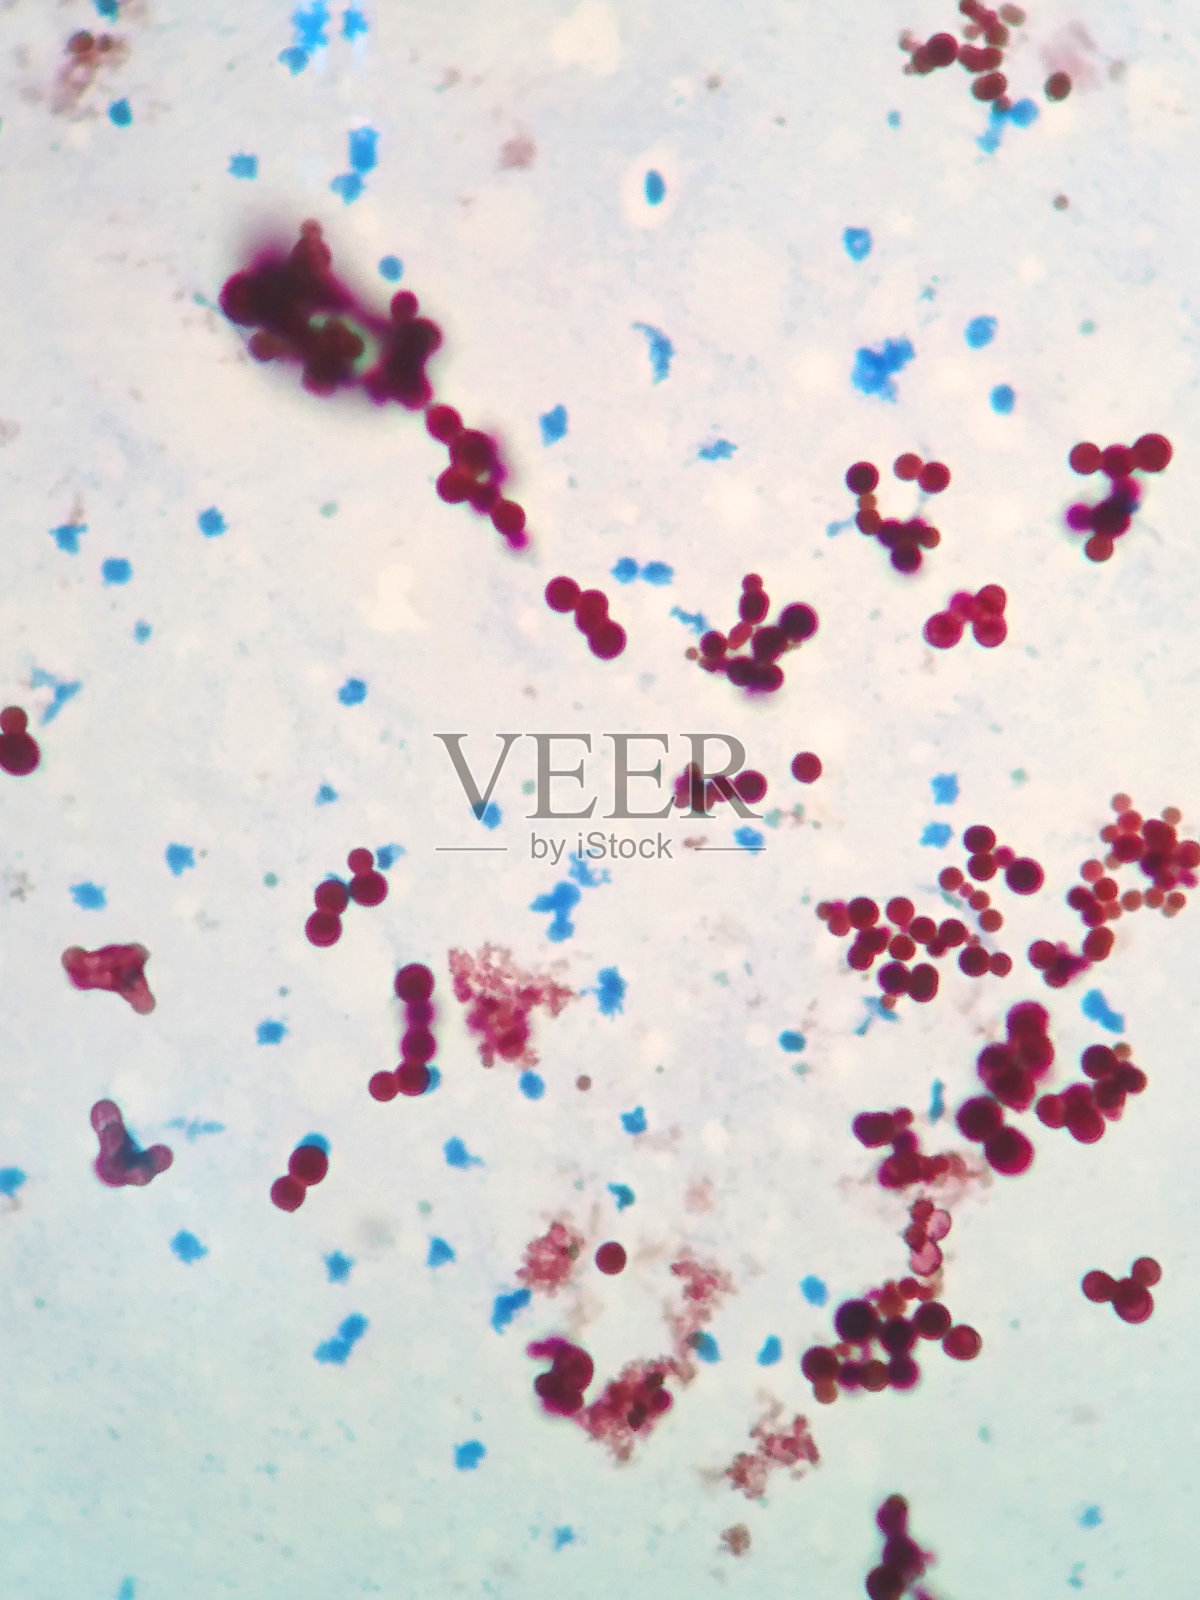 分枝杆菌是导致鱼类或宠物感染结核的细菌照片摄影图片